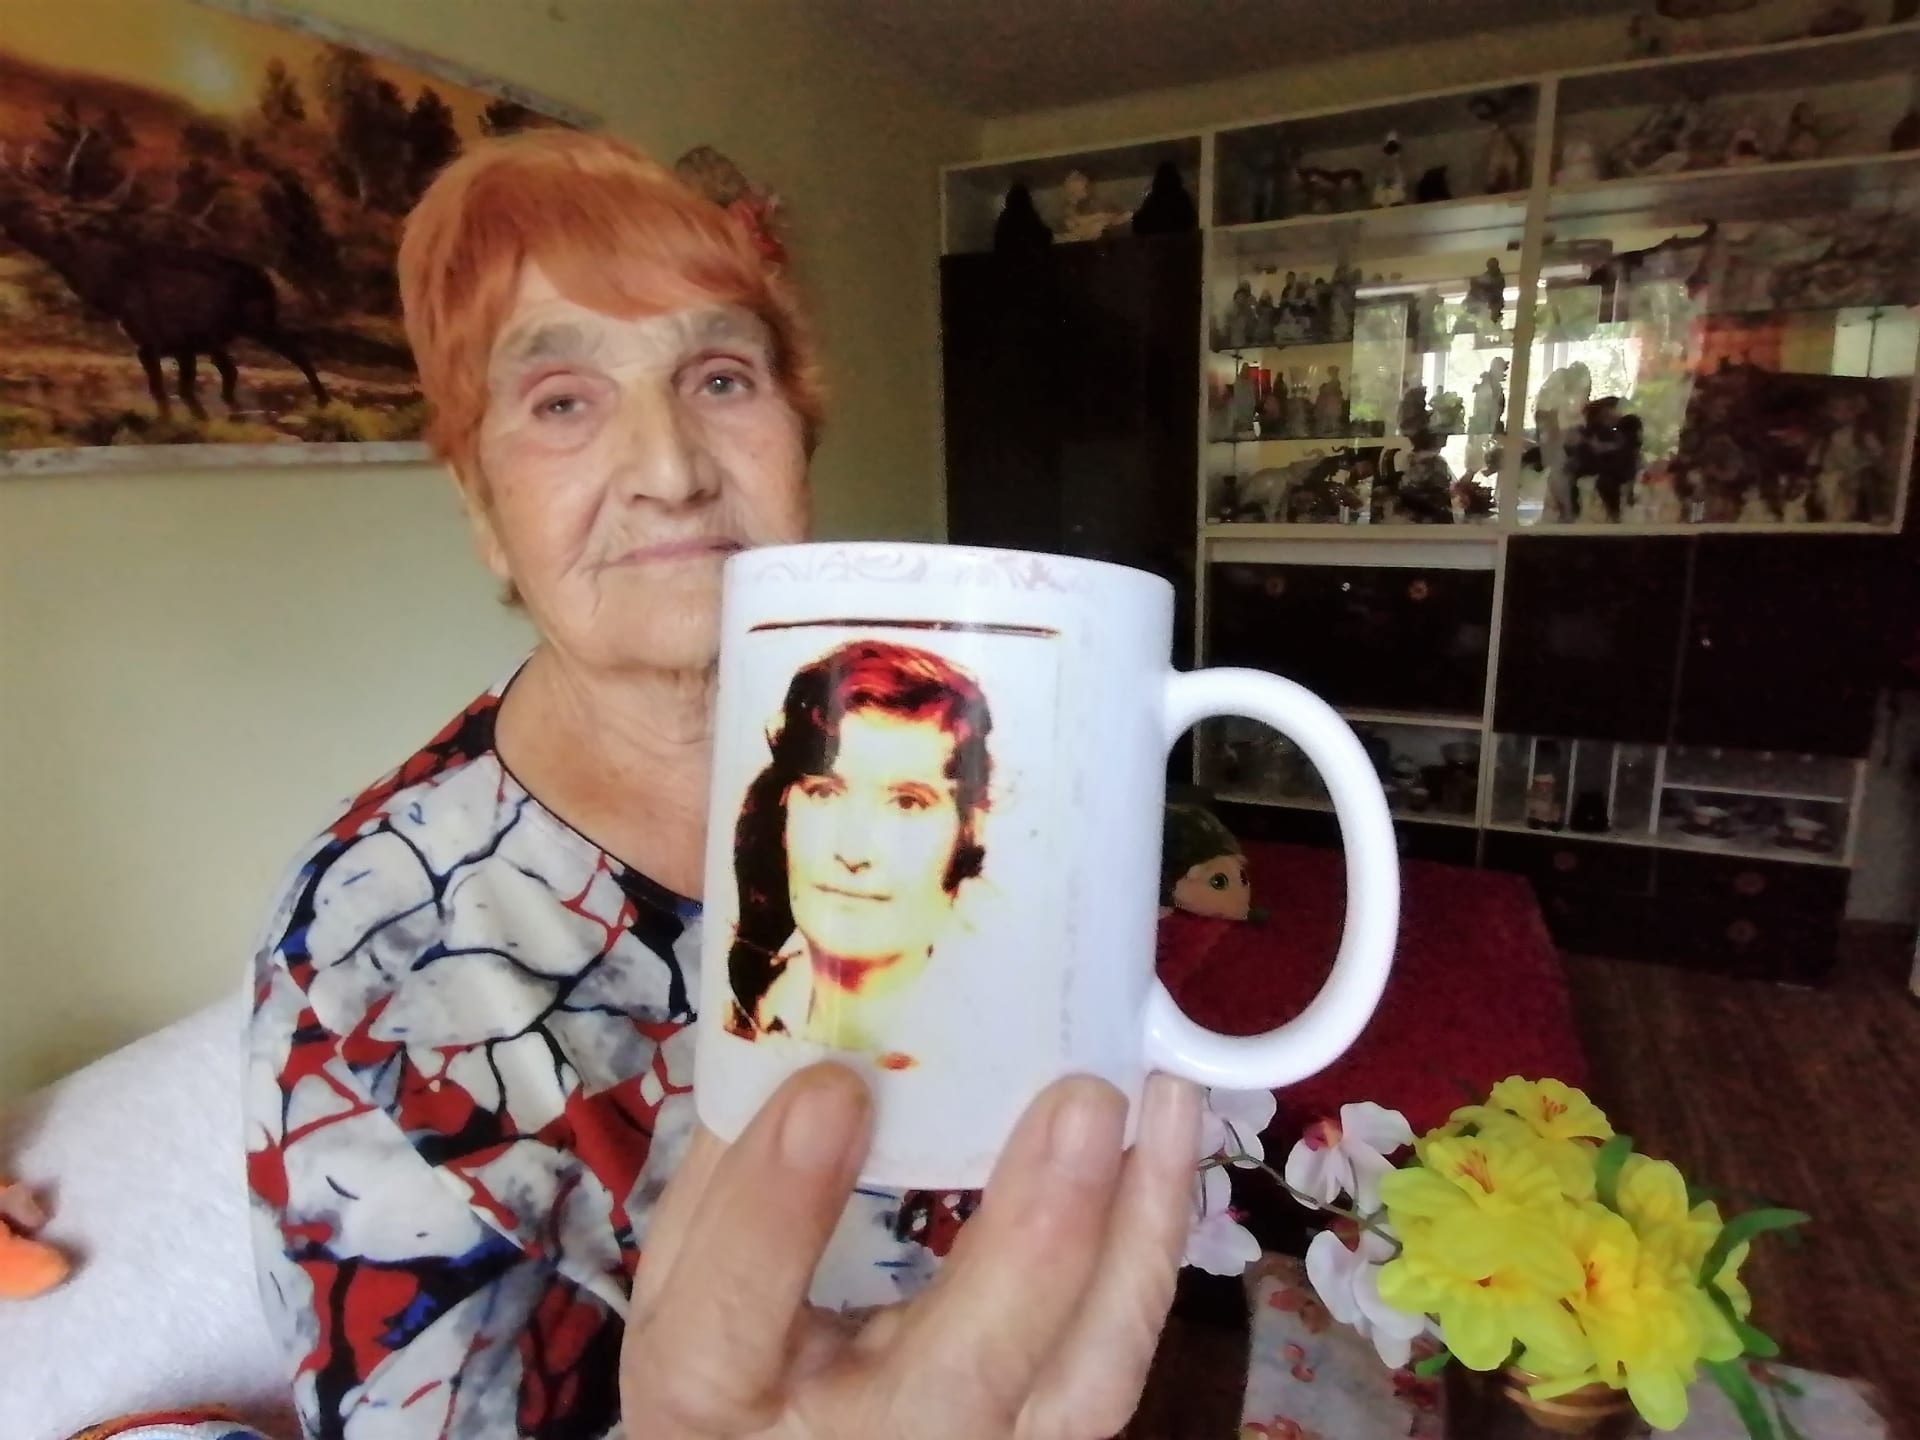 Mária Gažiová přežila pogrom v romské osadě na Slovensku. Voják po ní hodil poleno, tekla krev, jizva zůstává dodnes. Psal se rok 1944, v roce 2022 ji děsí exekuce a vystěhování.